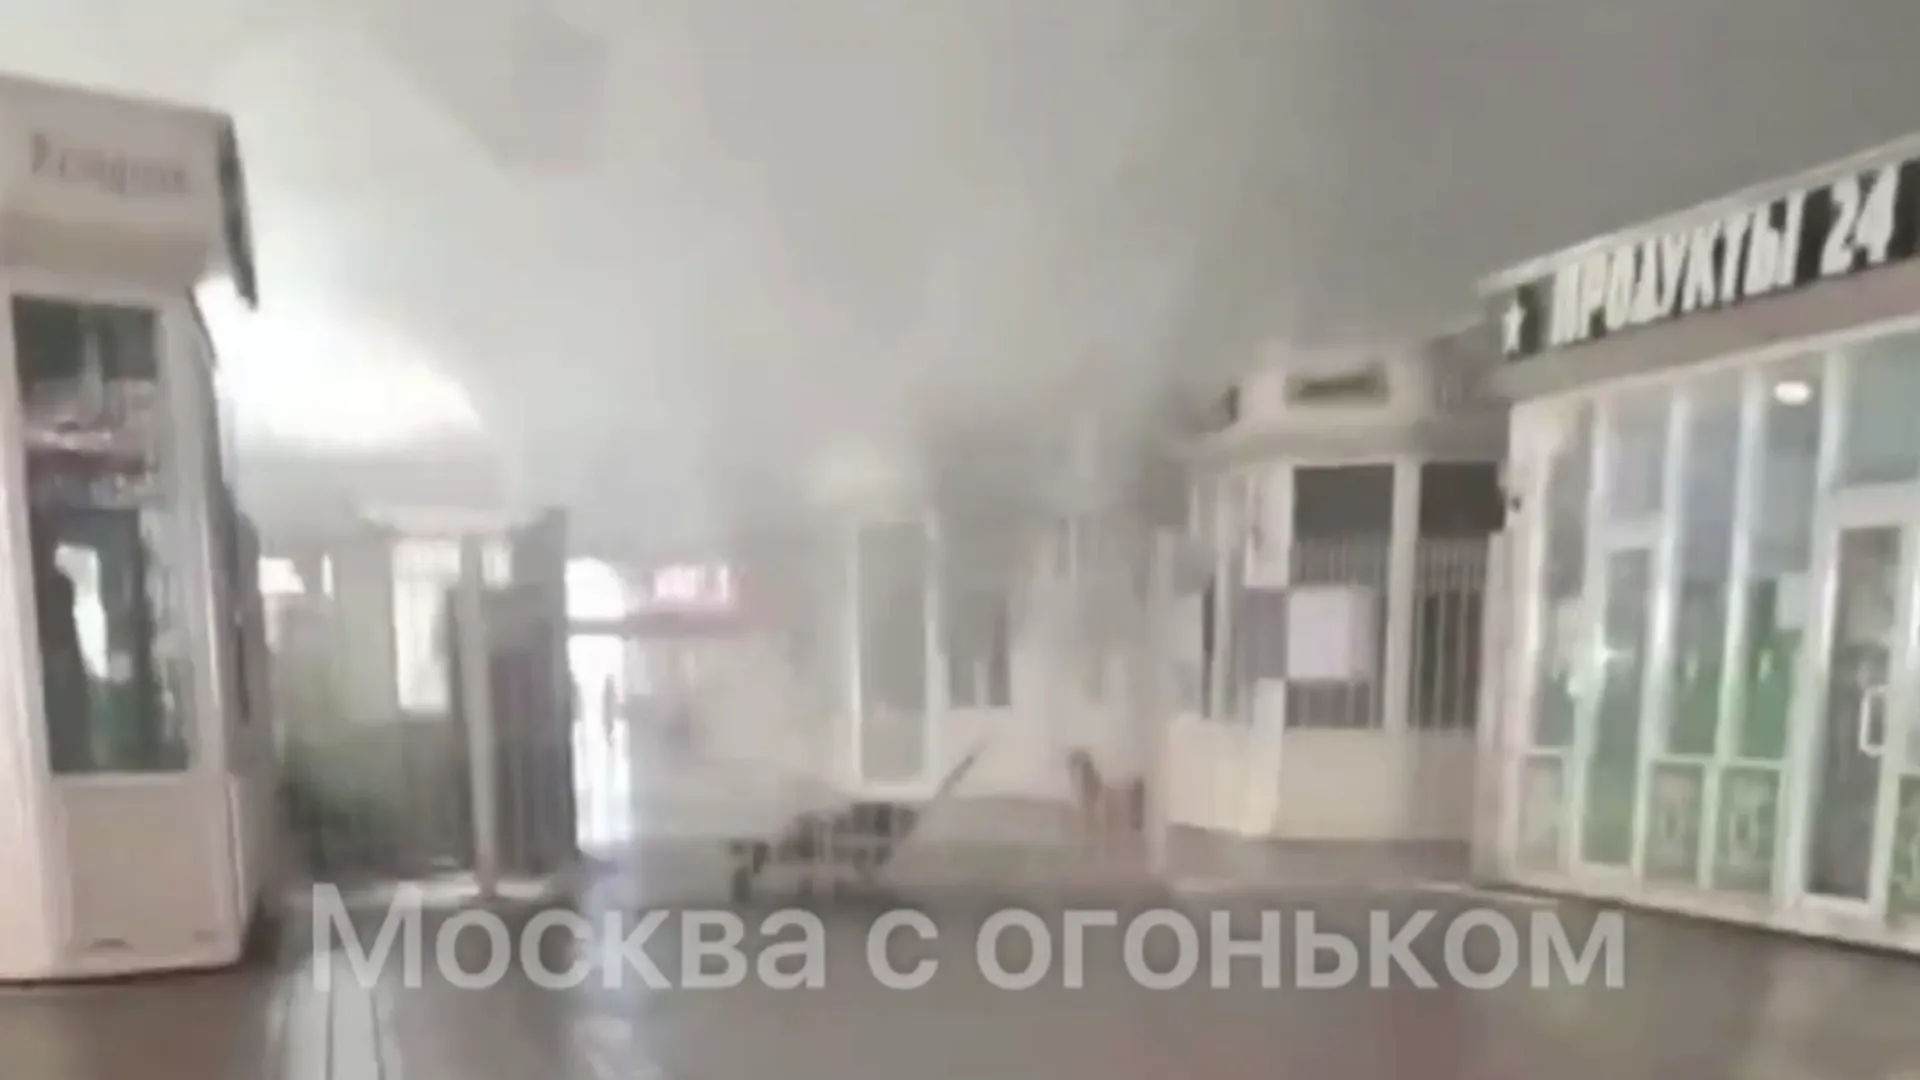 Торговая палатка сгорела на Казанском вокзале в Москве